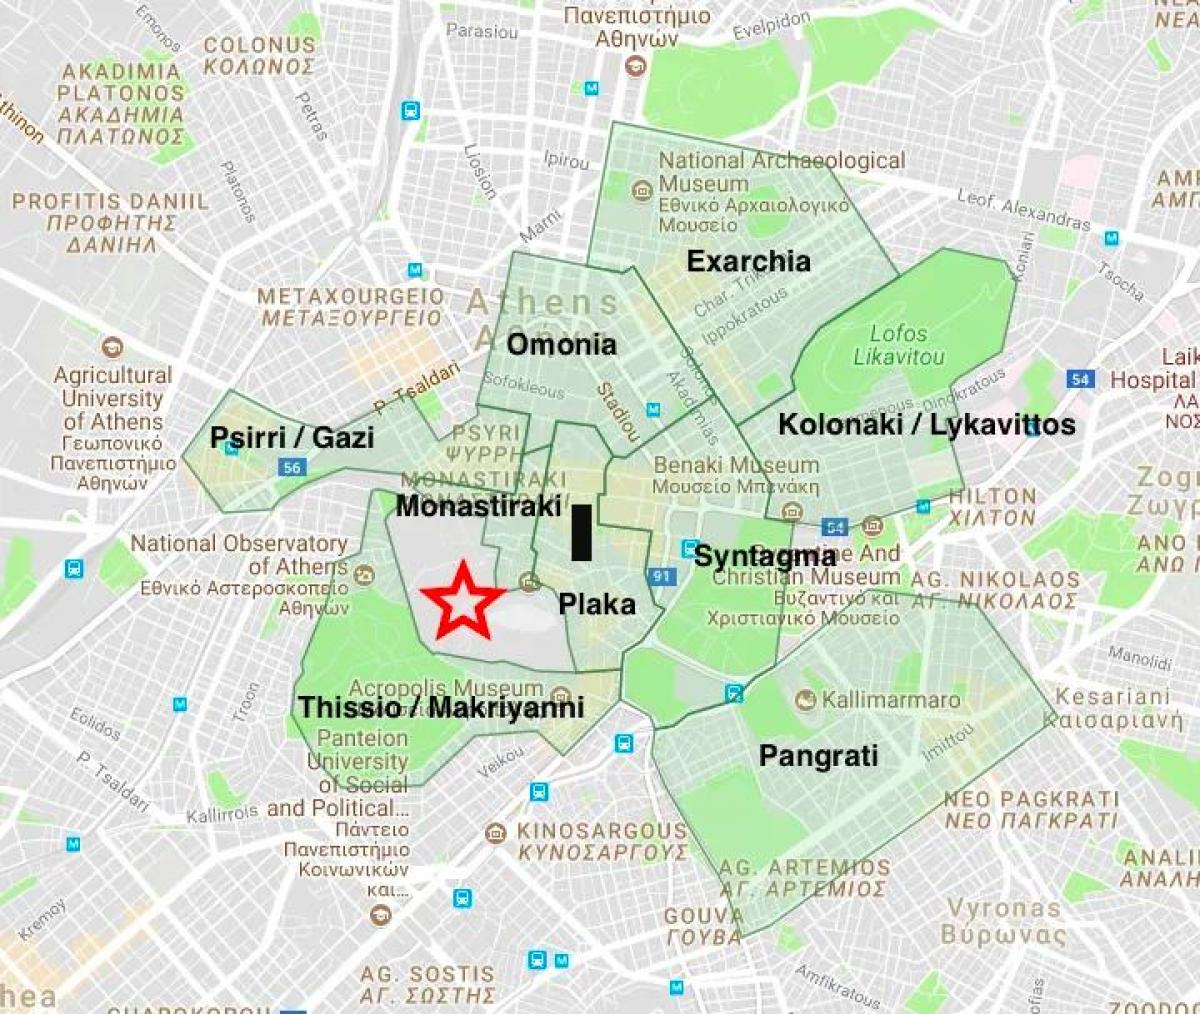 Mappa dei quartieri di Atene